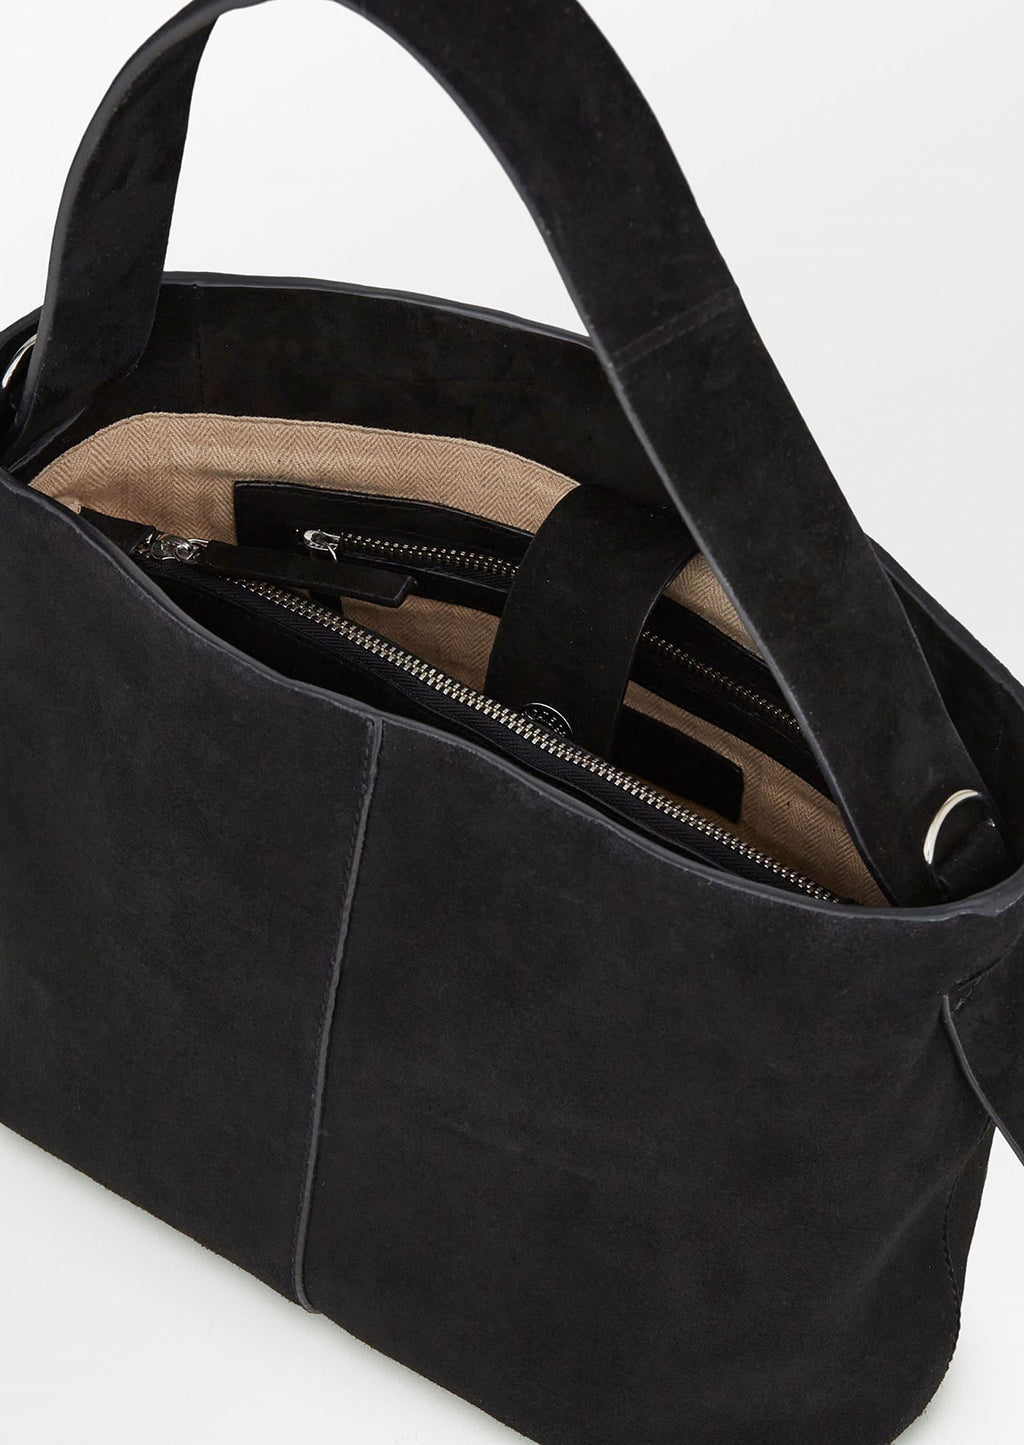 4: A suede handbag in black.